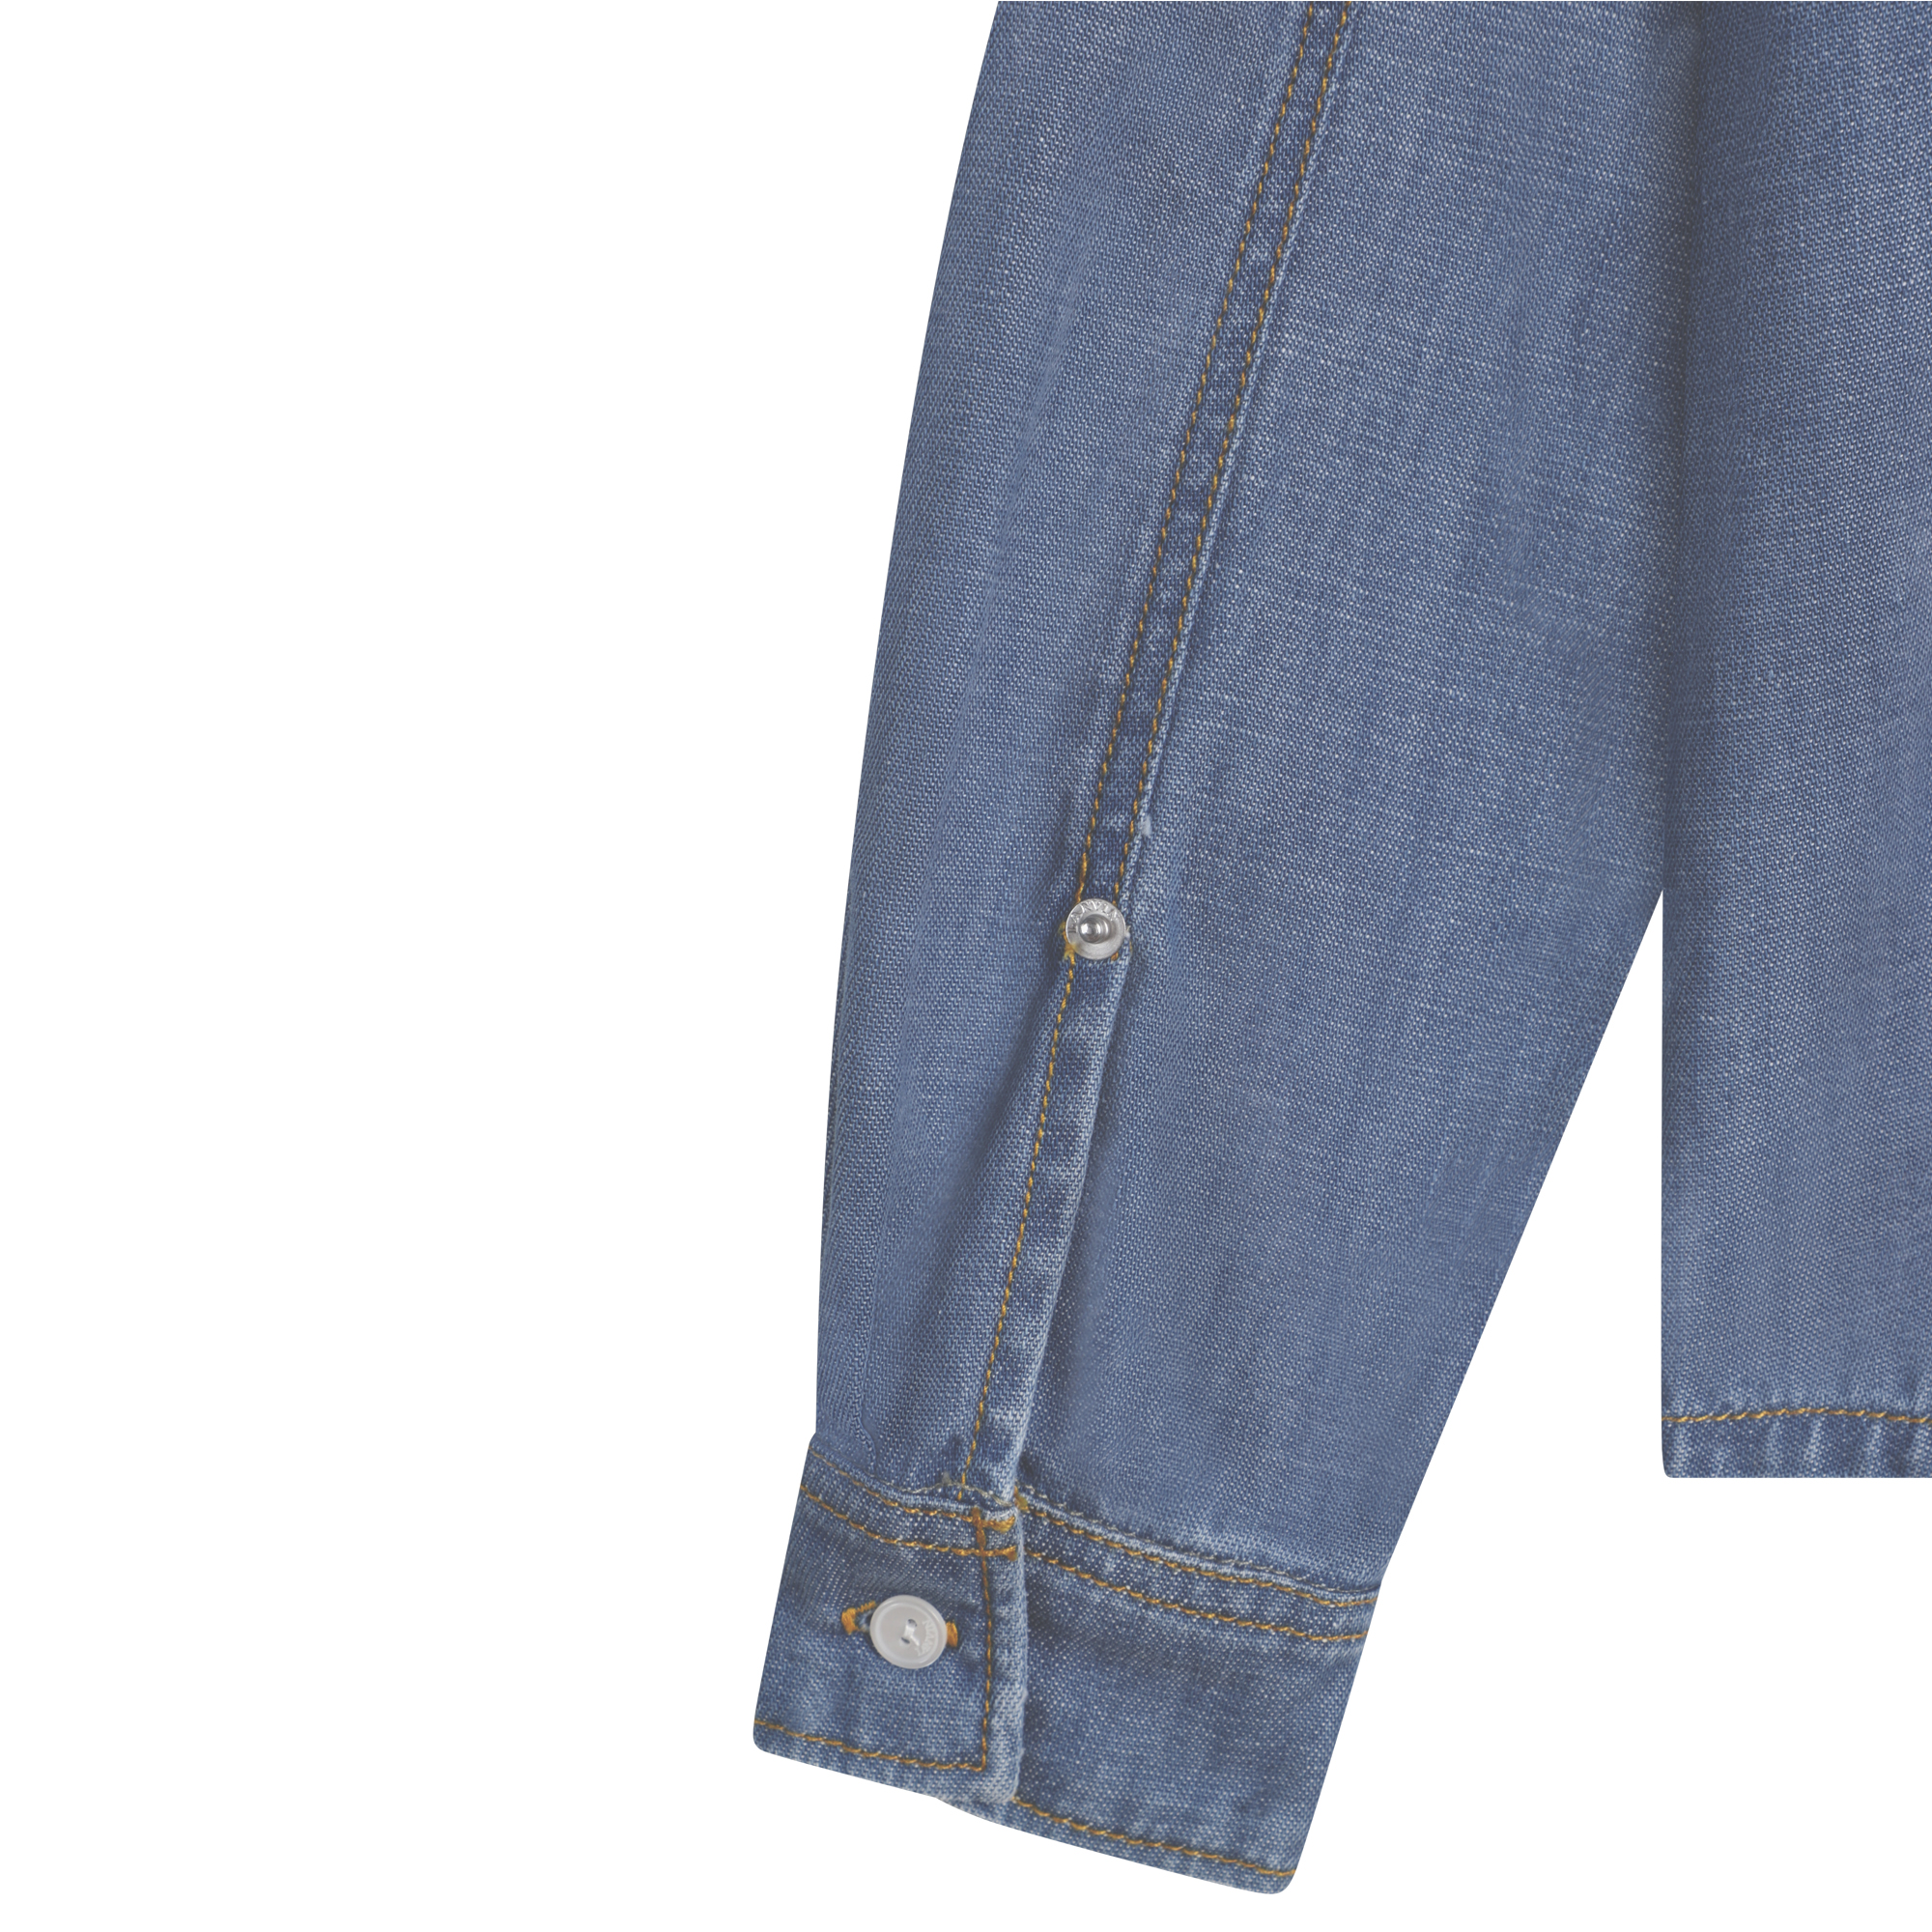 Camicia di jeans LANVIN Per RAGAZZO